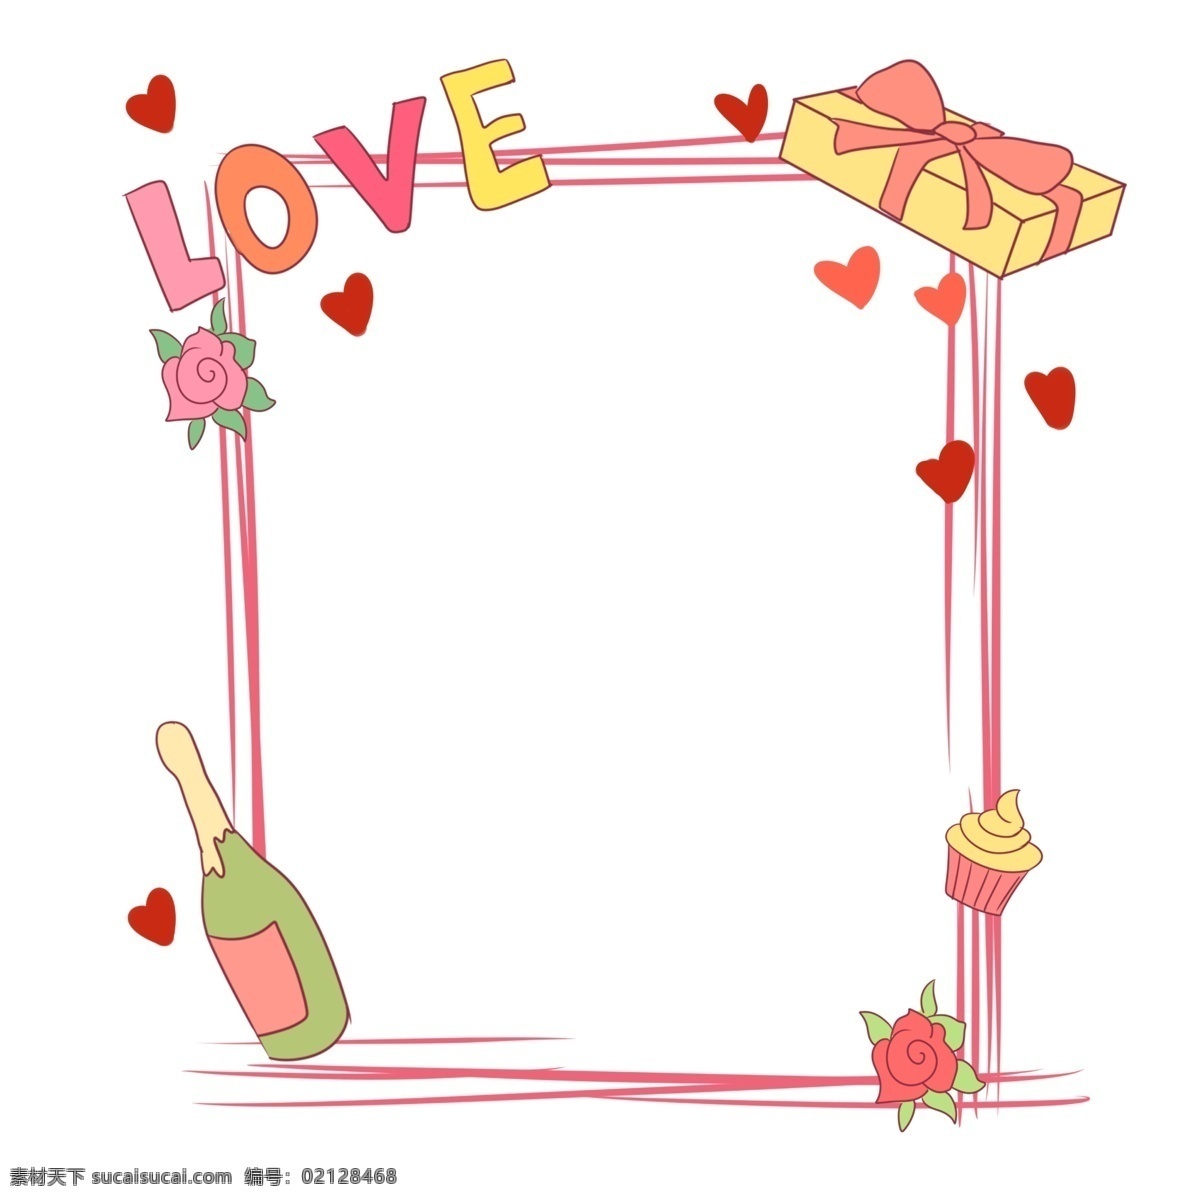 卡通 边框 手绘 插画 卡通手绘插画 可爱边框 简单边框 小清新 唯美 彩色 爱心 爱情 甜蜜 粉色